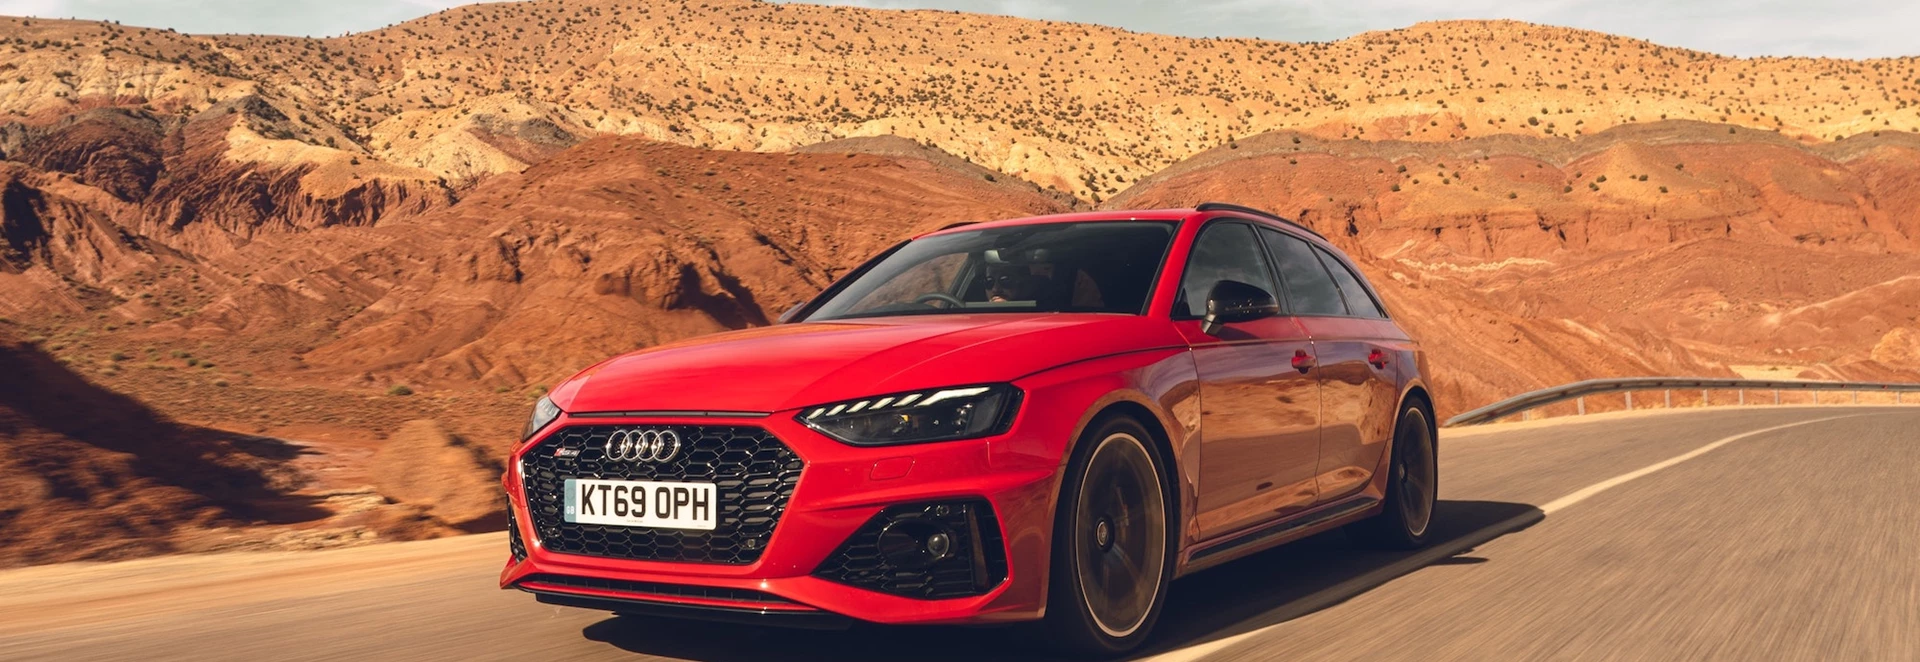 2020 Audi RS 4 Avant review